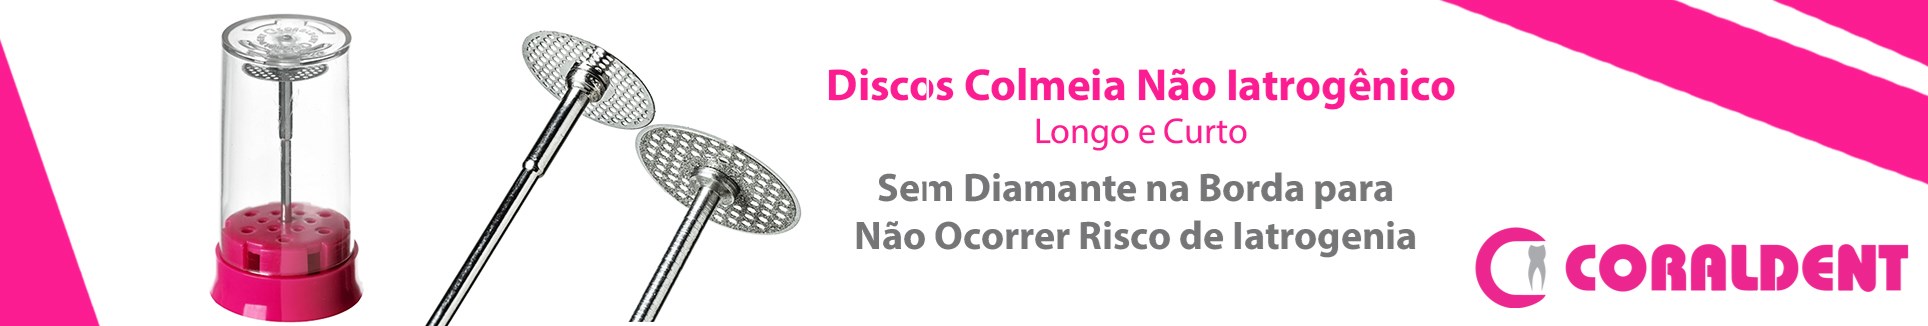 Banner Disco Colmeia Não Iatrogênico